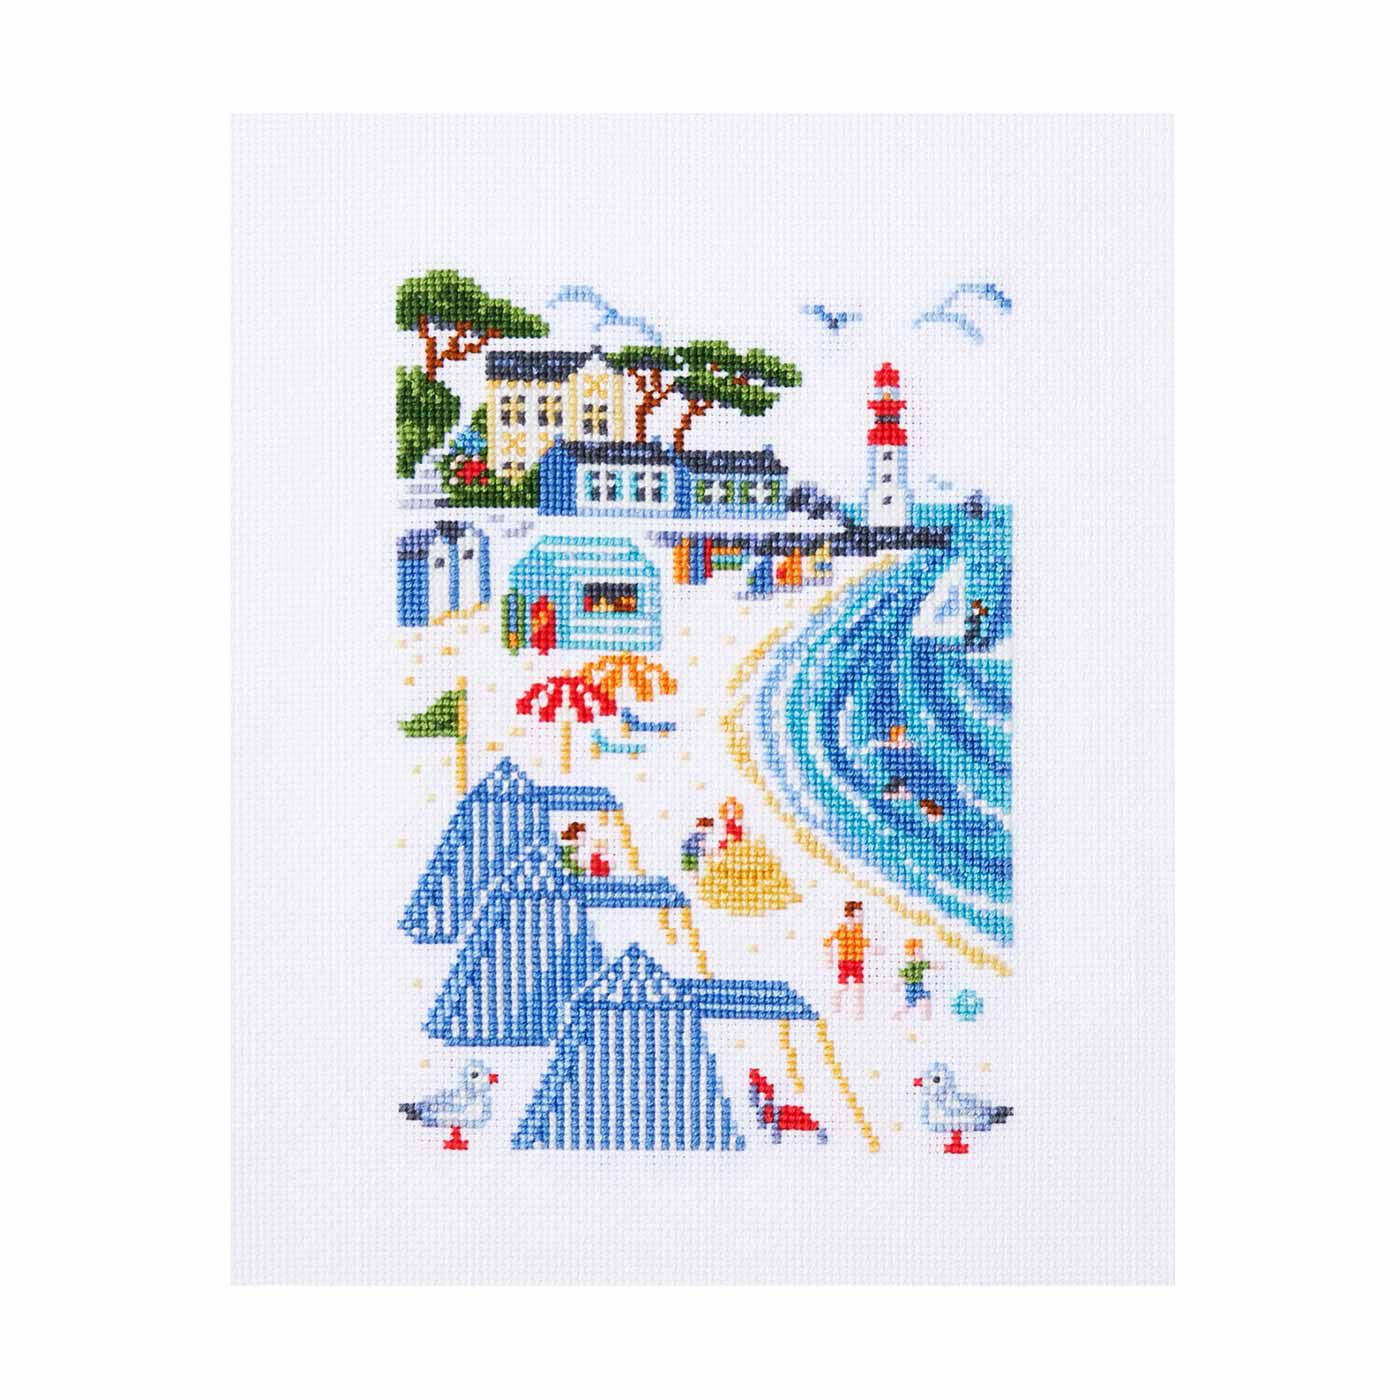 Couturier|アンヌさんが描くフランスの暮らしと四季の風景クロスステッチの会|La Plage:海岸